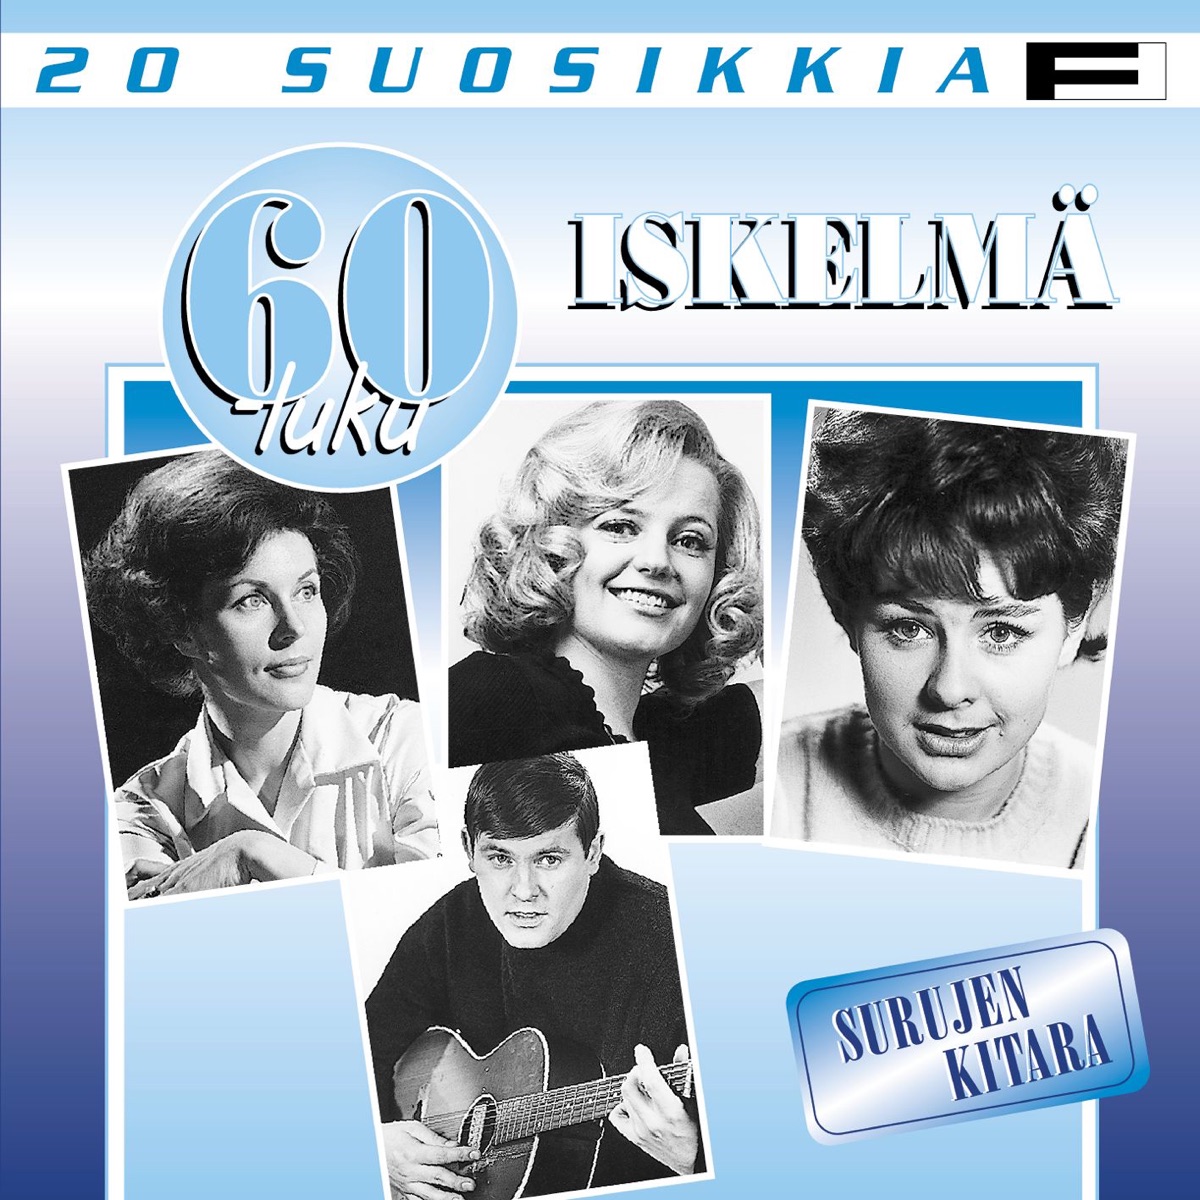 20 Suosikkia / 60-luku / Iskelmä / Surujen Kitara - Album by Various  Artists - Apple Music